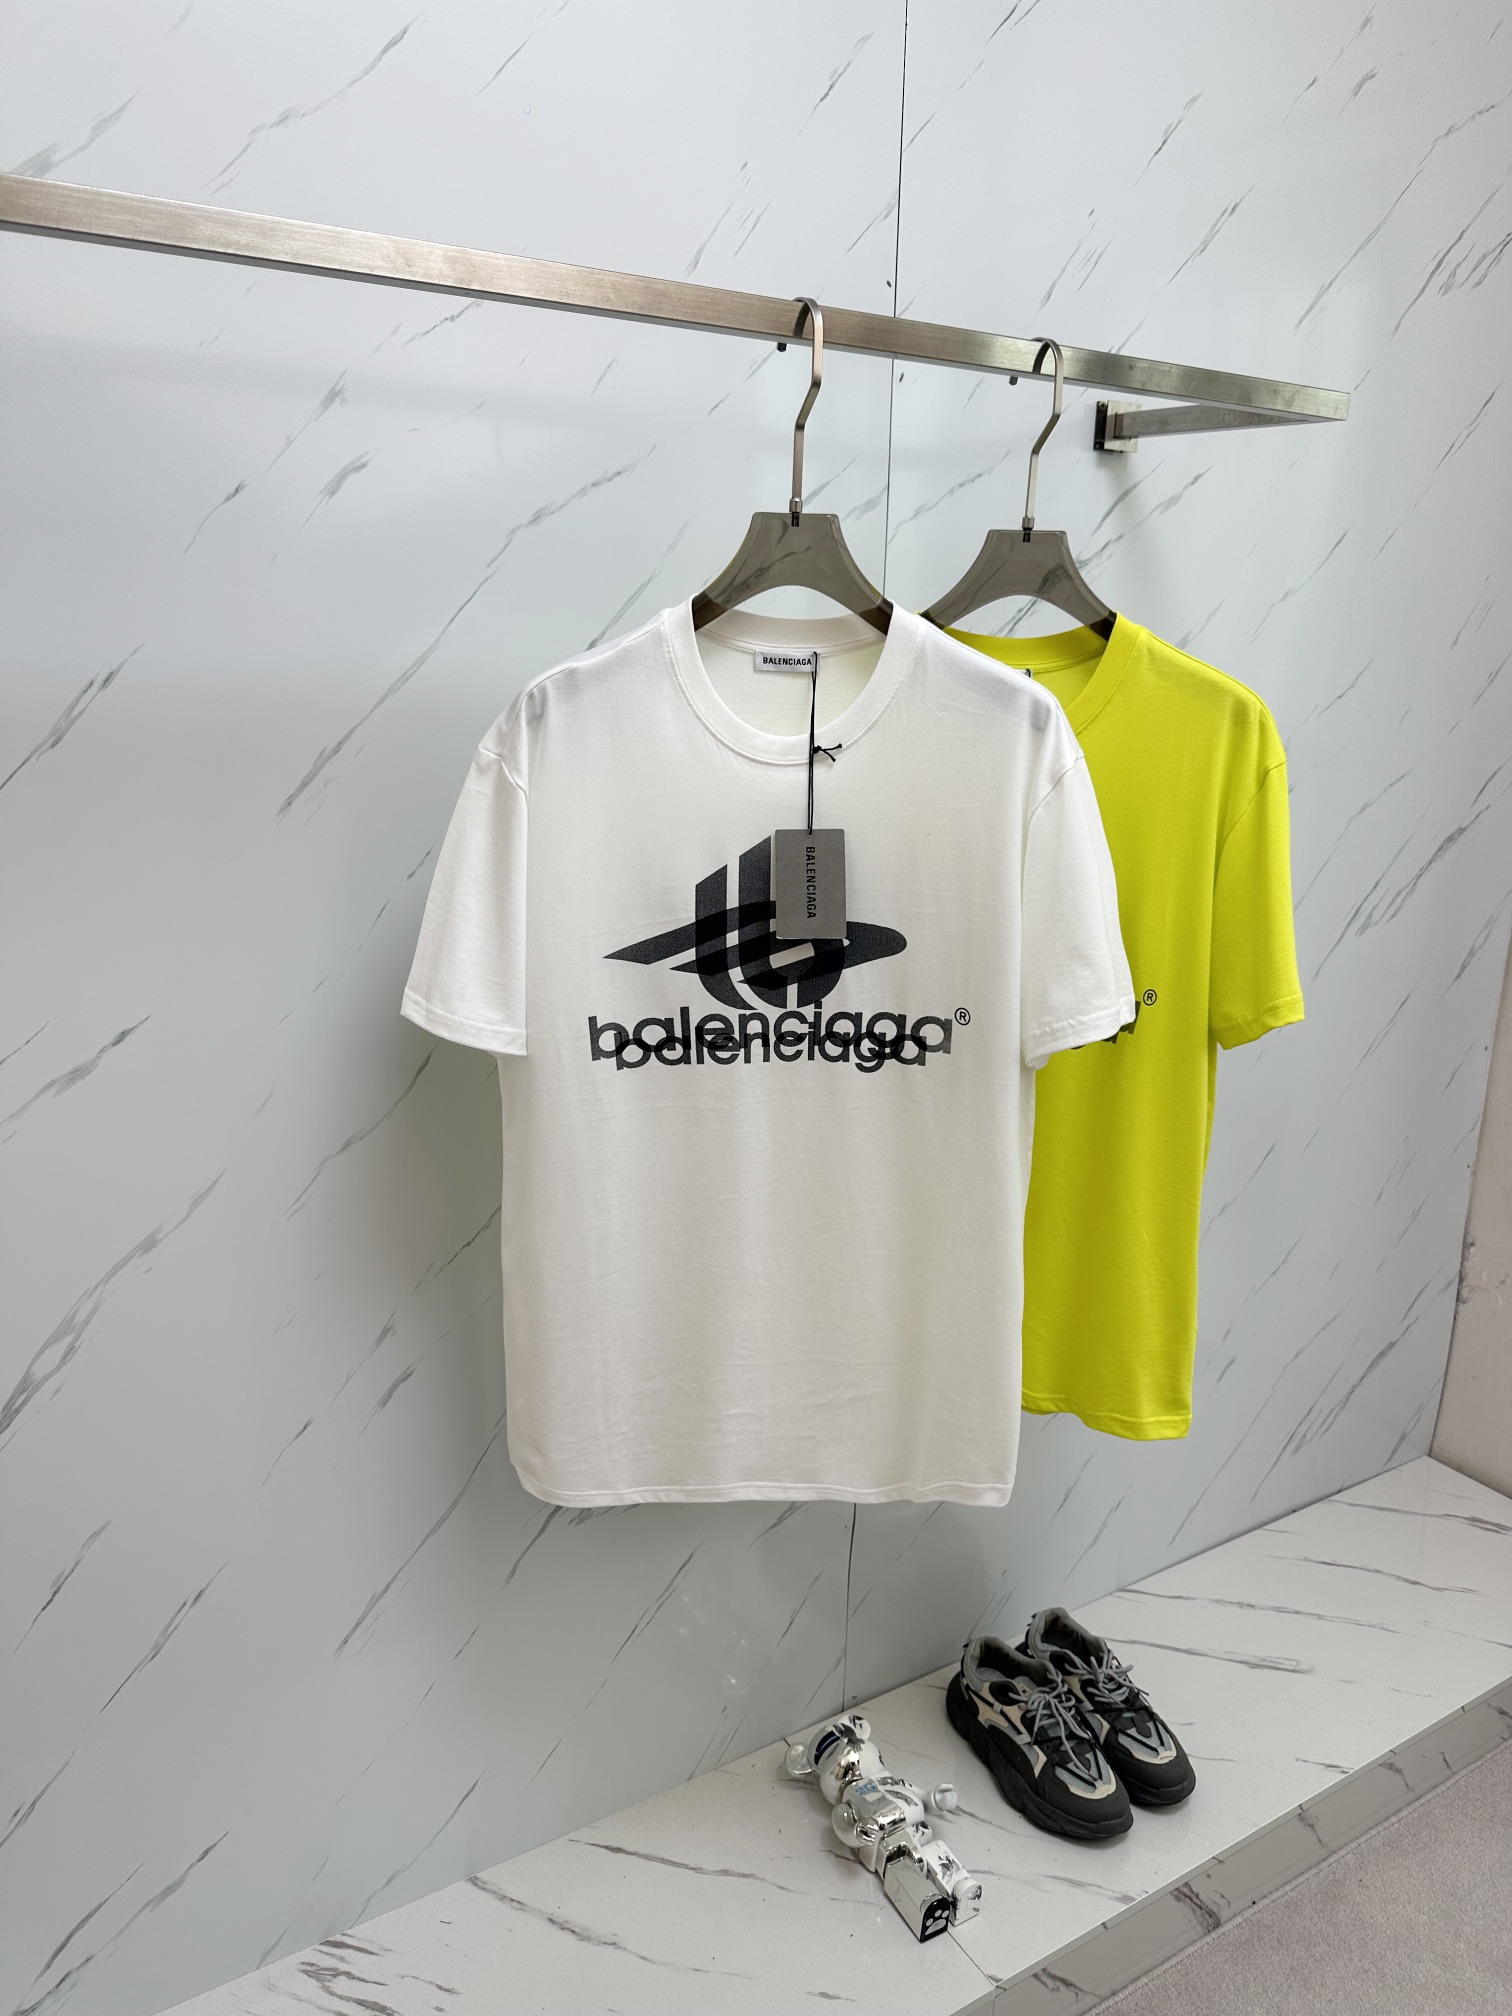 Balenciaga Clothing T-Shirt Cotton Spring/Summer Collection Fashion Short Sleeve